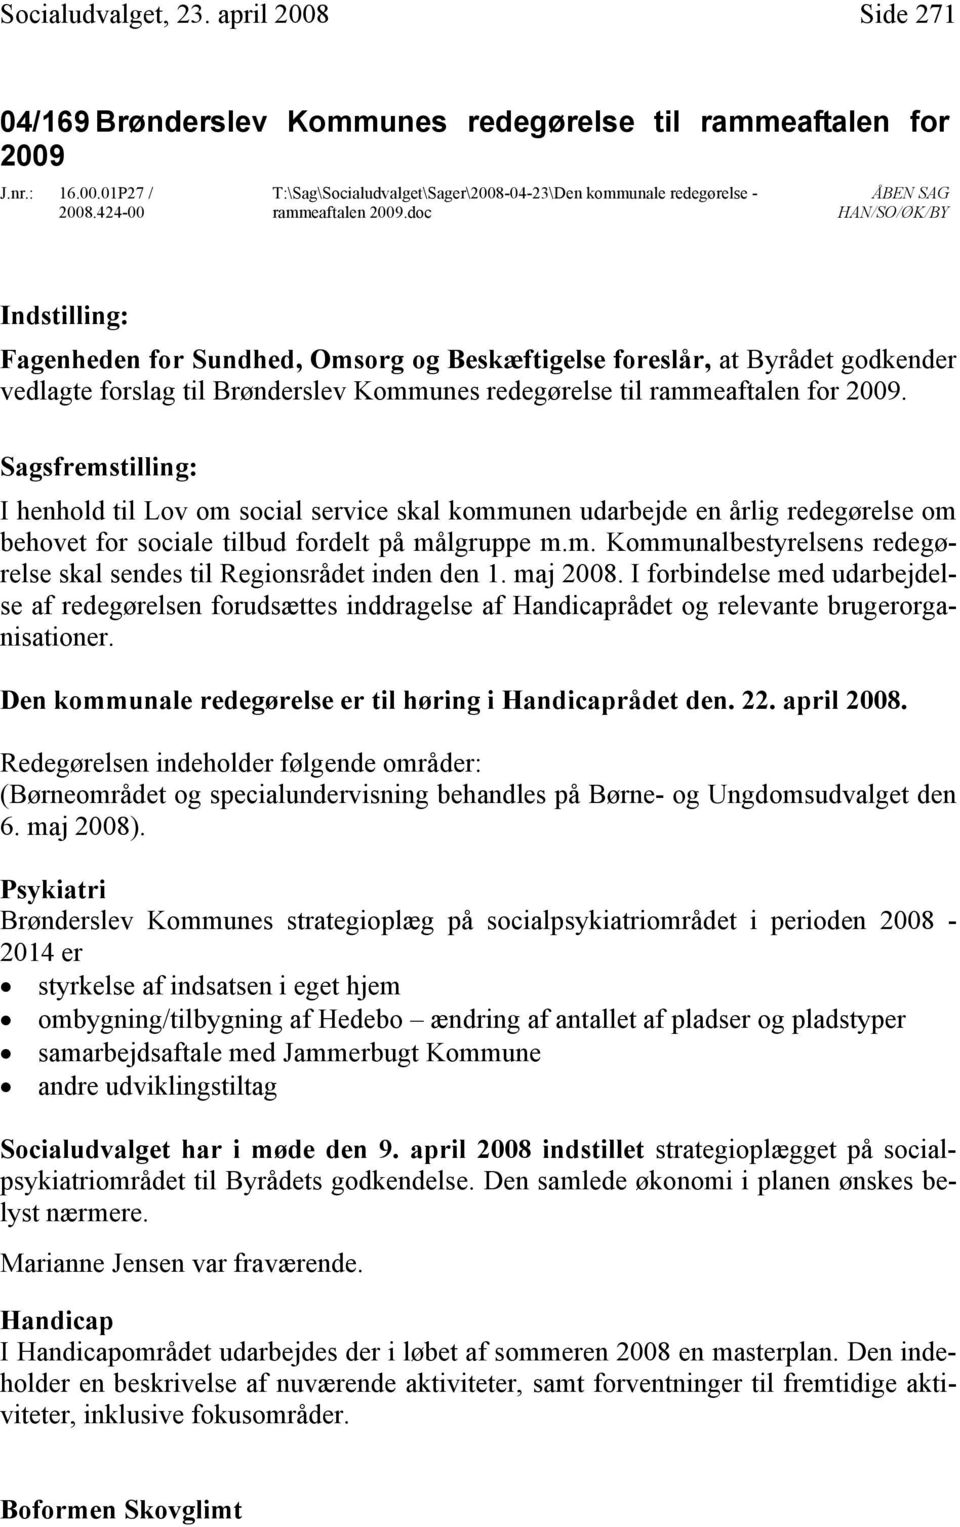 doc ÅBEN SAG HAN/SO/ØK/BY Indstilling: Fagenheden for Sundhed, Omsorg og Beskæftigelse foreslår, at Byrådet godkender vedlagte forslag til Brønderslev Kommunes redegørelse til rammeaftalen for 2009.